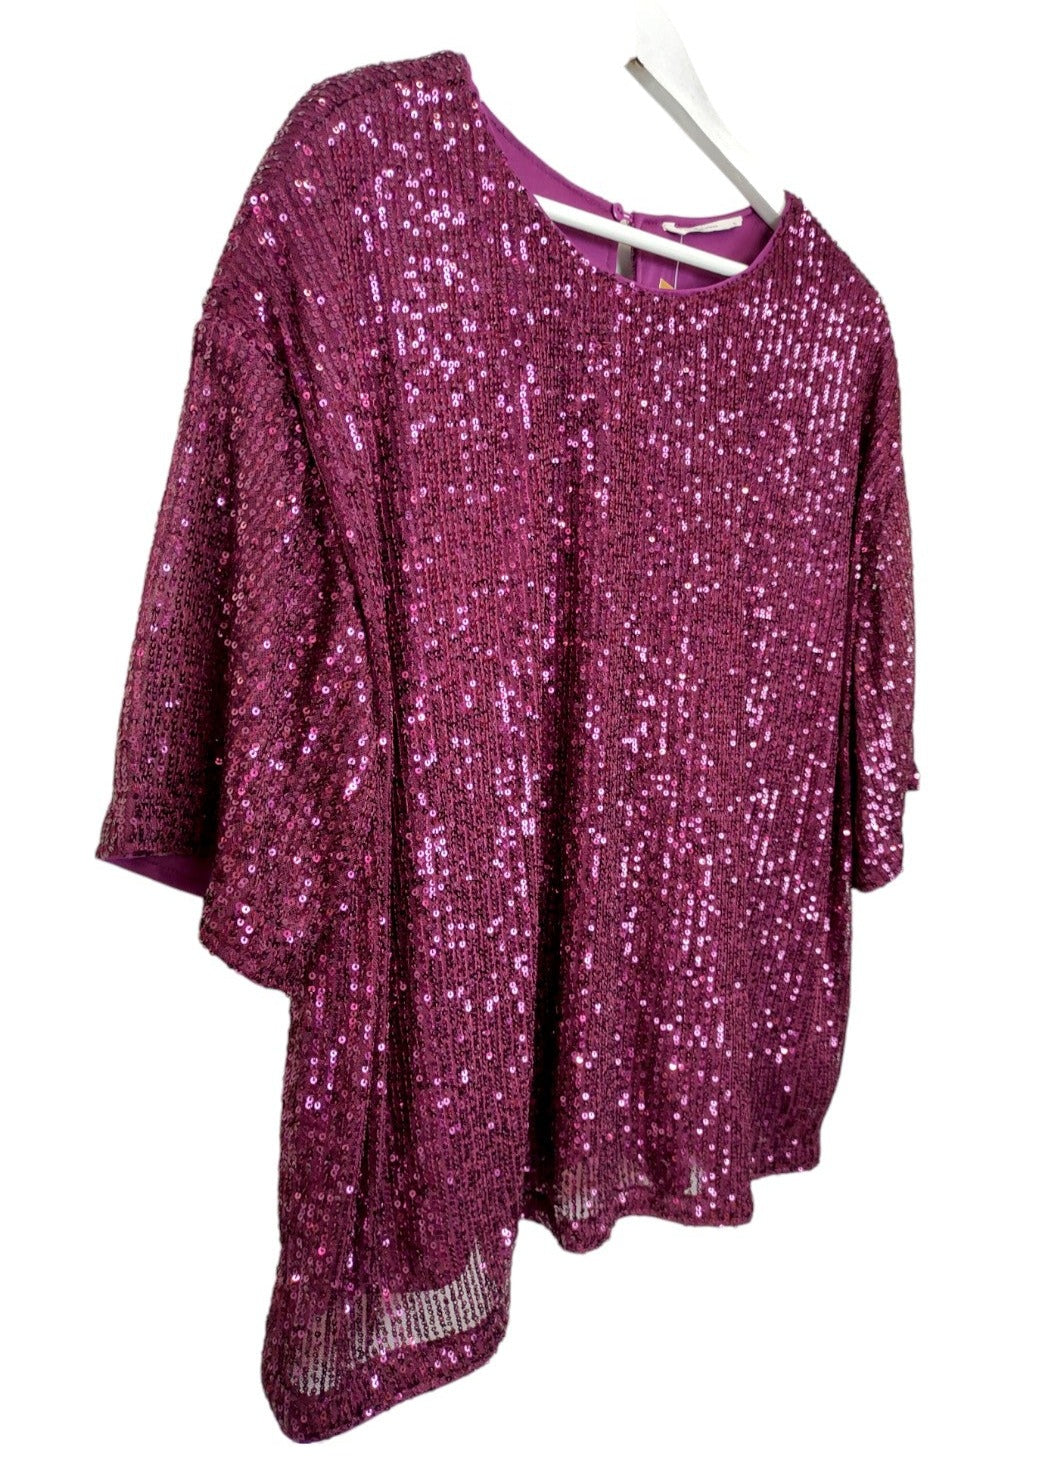 Αμπιγιέ, Γυναικεία Μπλούζα TU WOMAN σε Μωβ χρώμα (XL)